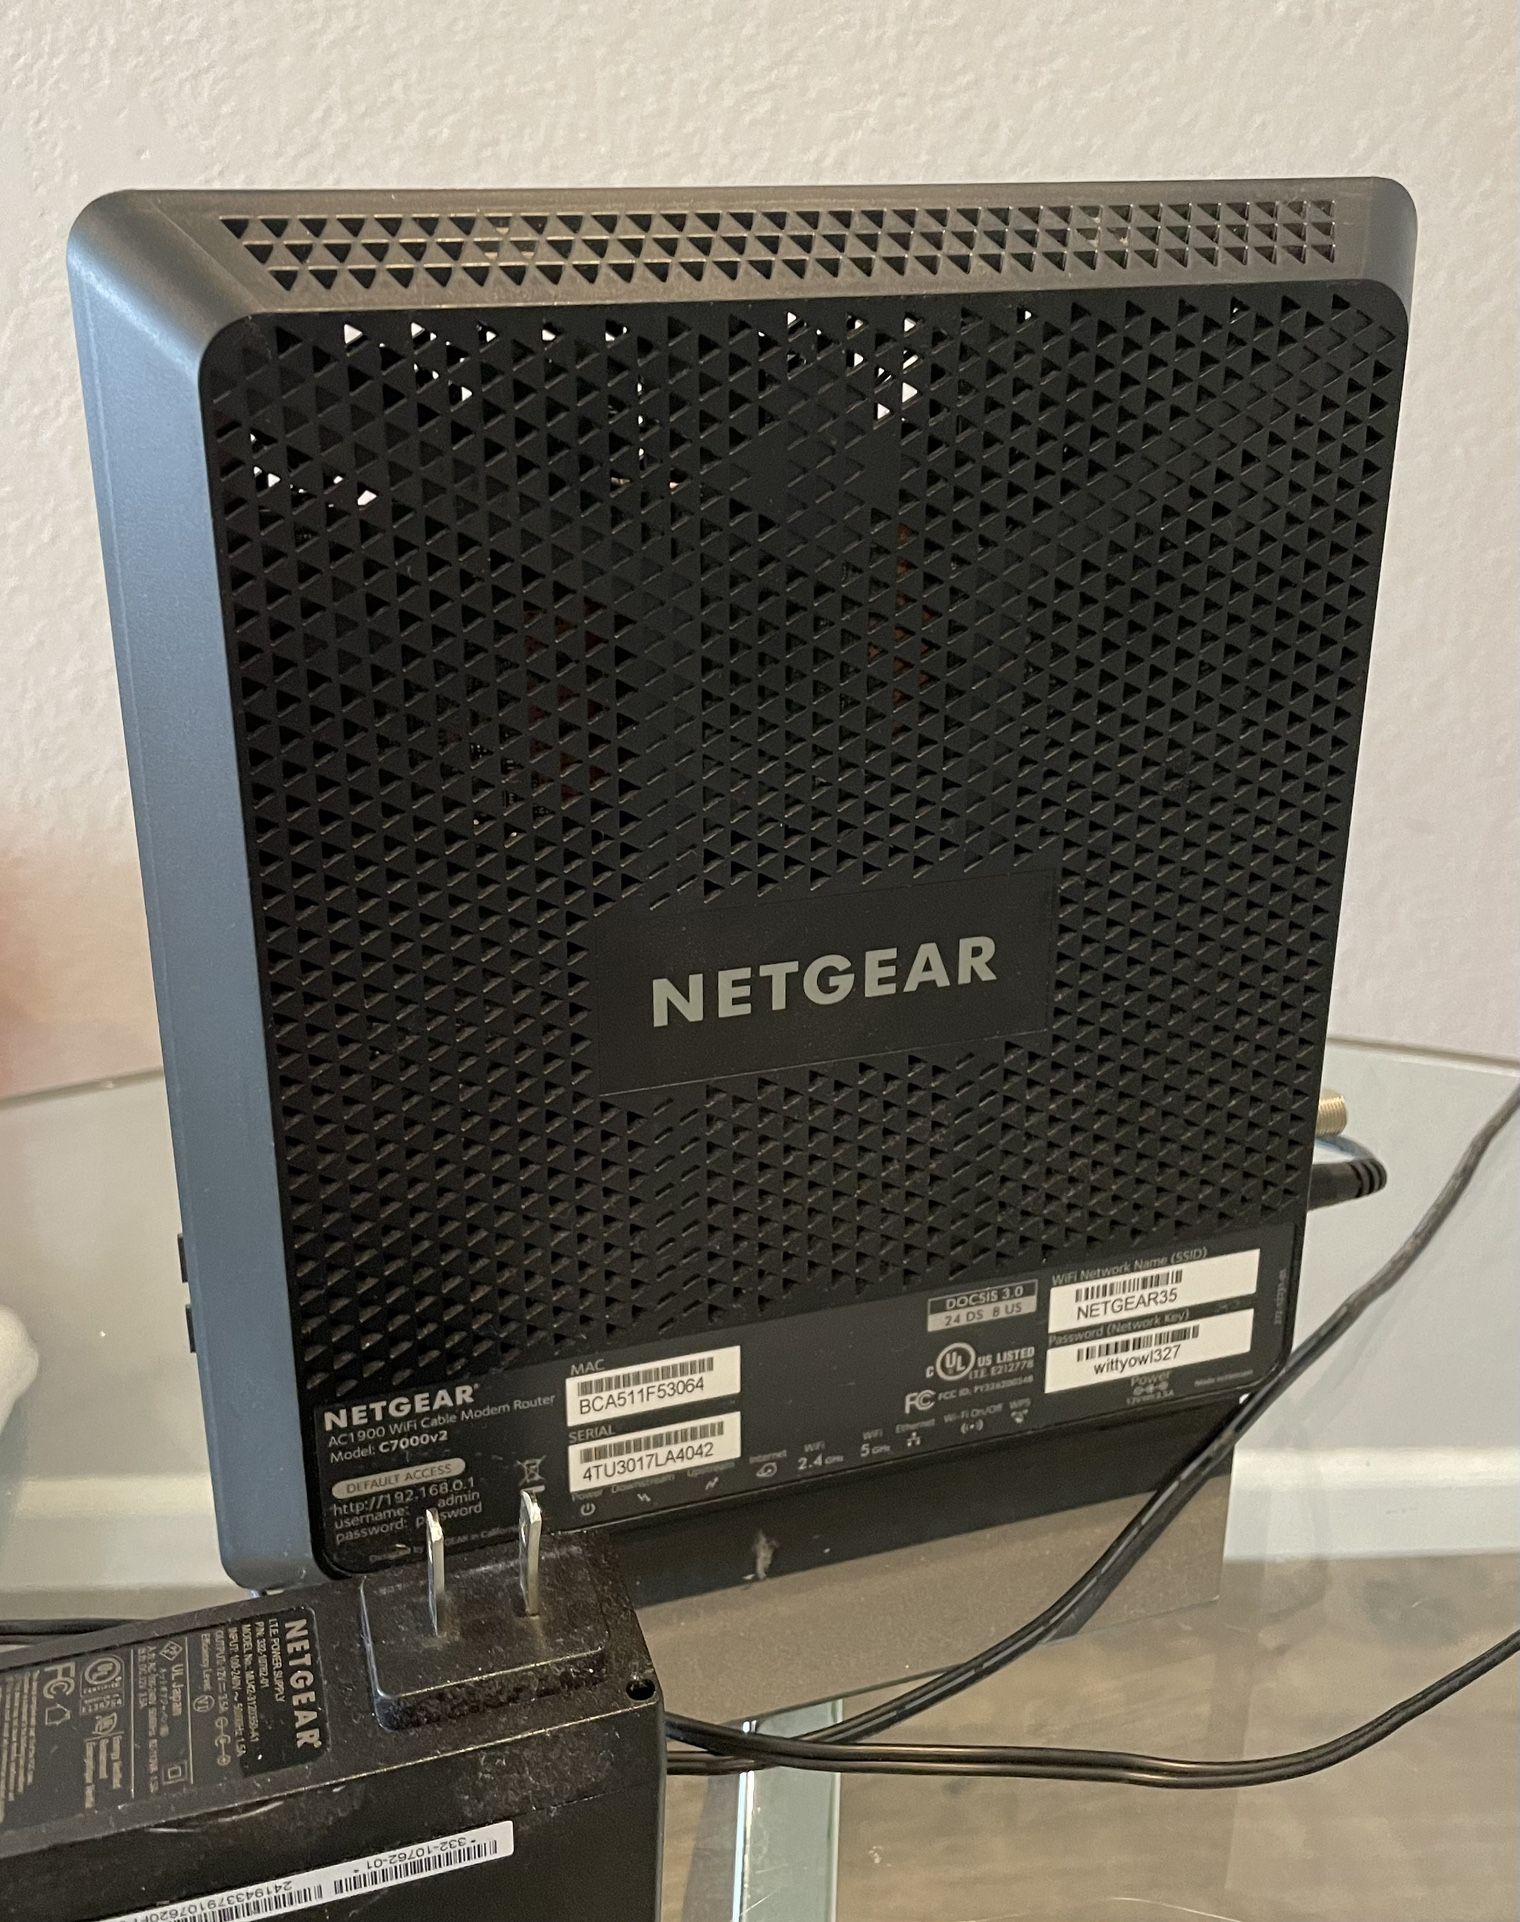 NETGEAR Nighthawk Modem Router Combo - AC1900